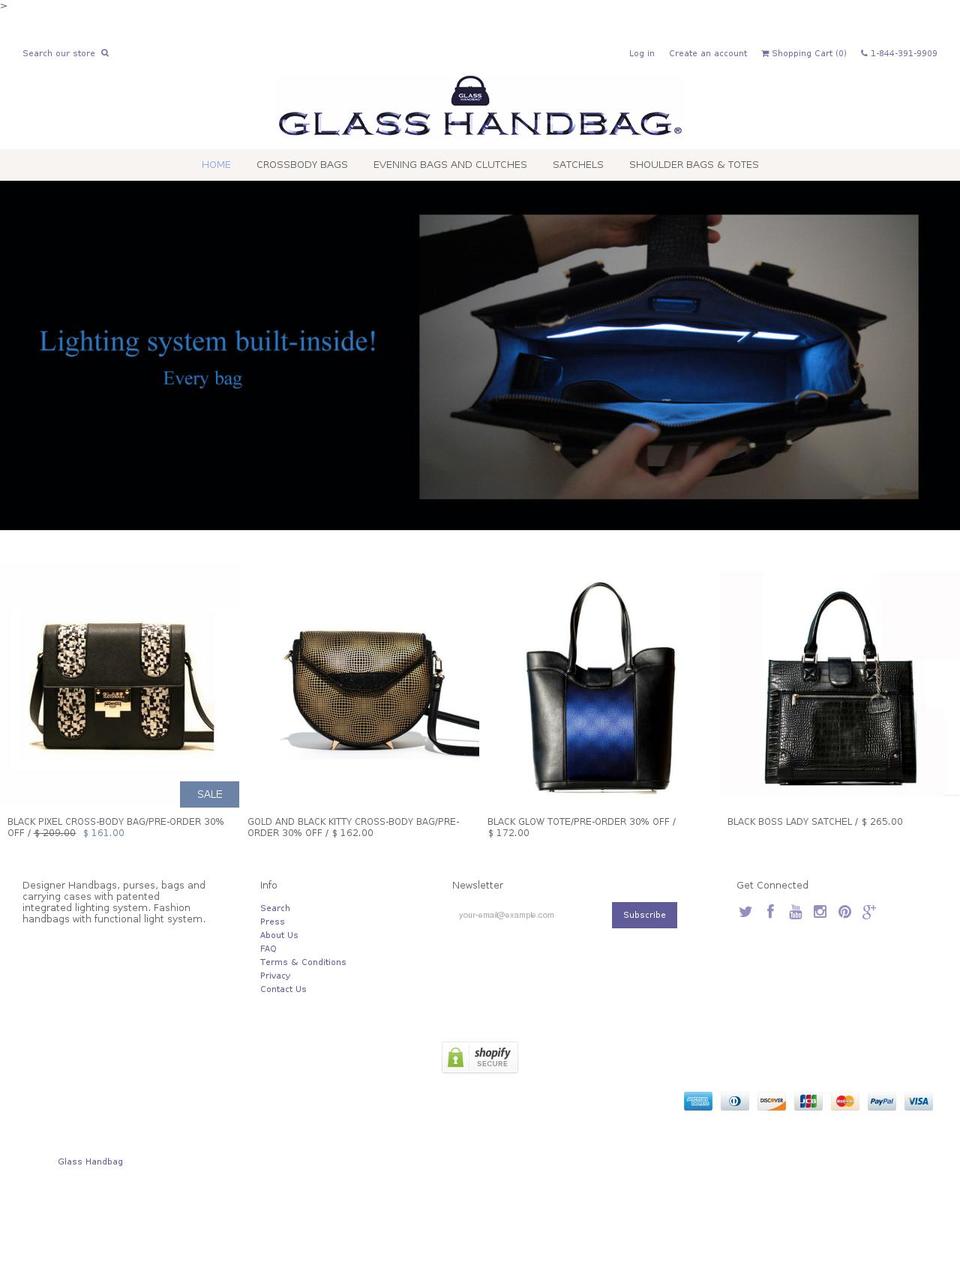 theglasshandbag.com shopify website screenshot